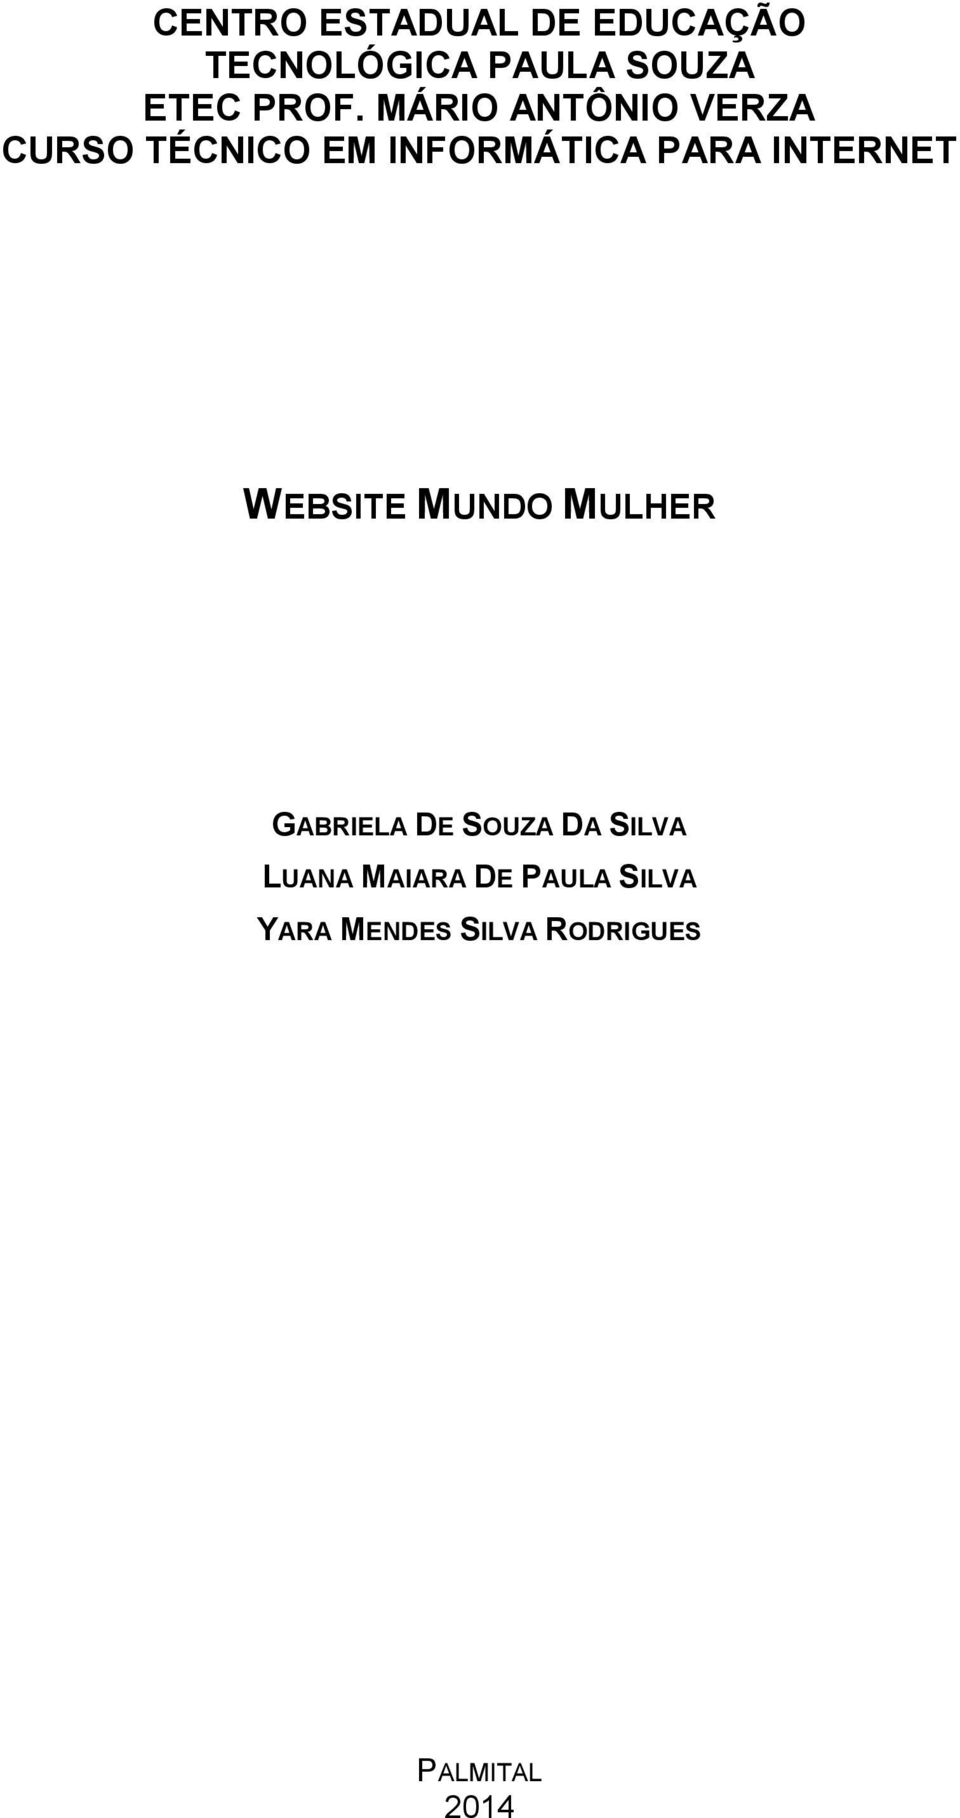 INTERNET WEBSITE MUNDO MULHER GABRIELA DE SOUZA DA SILVA